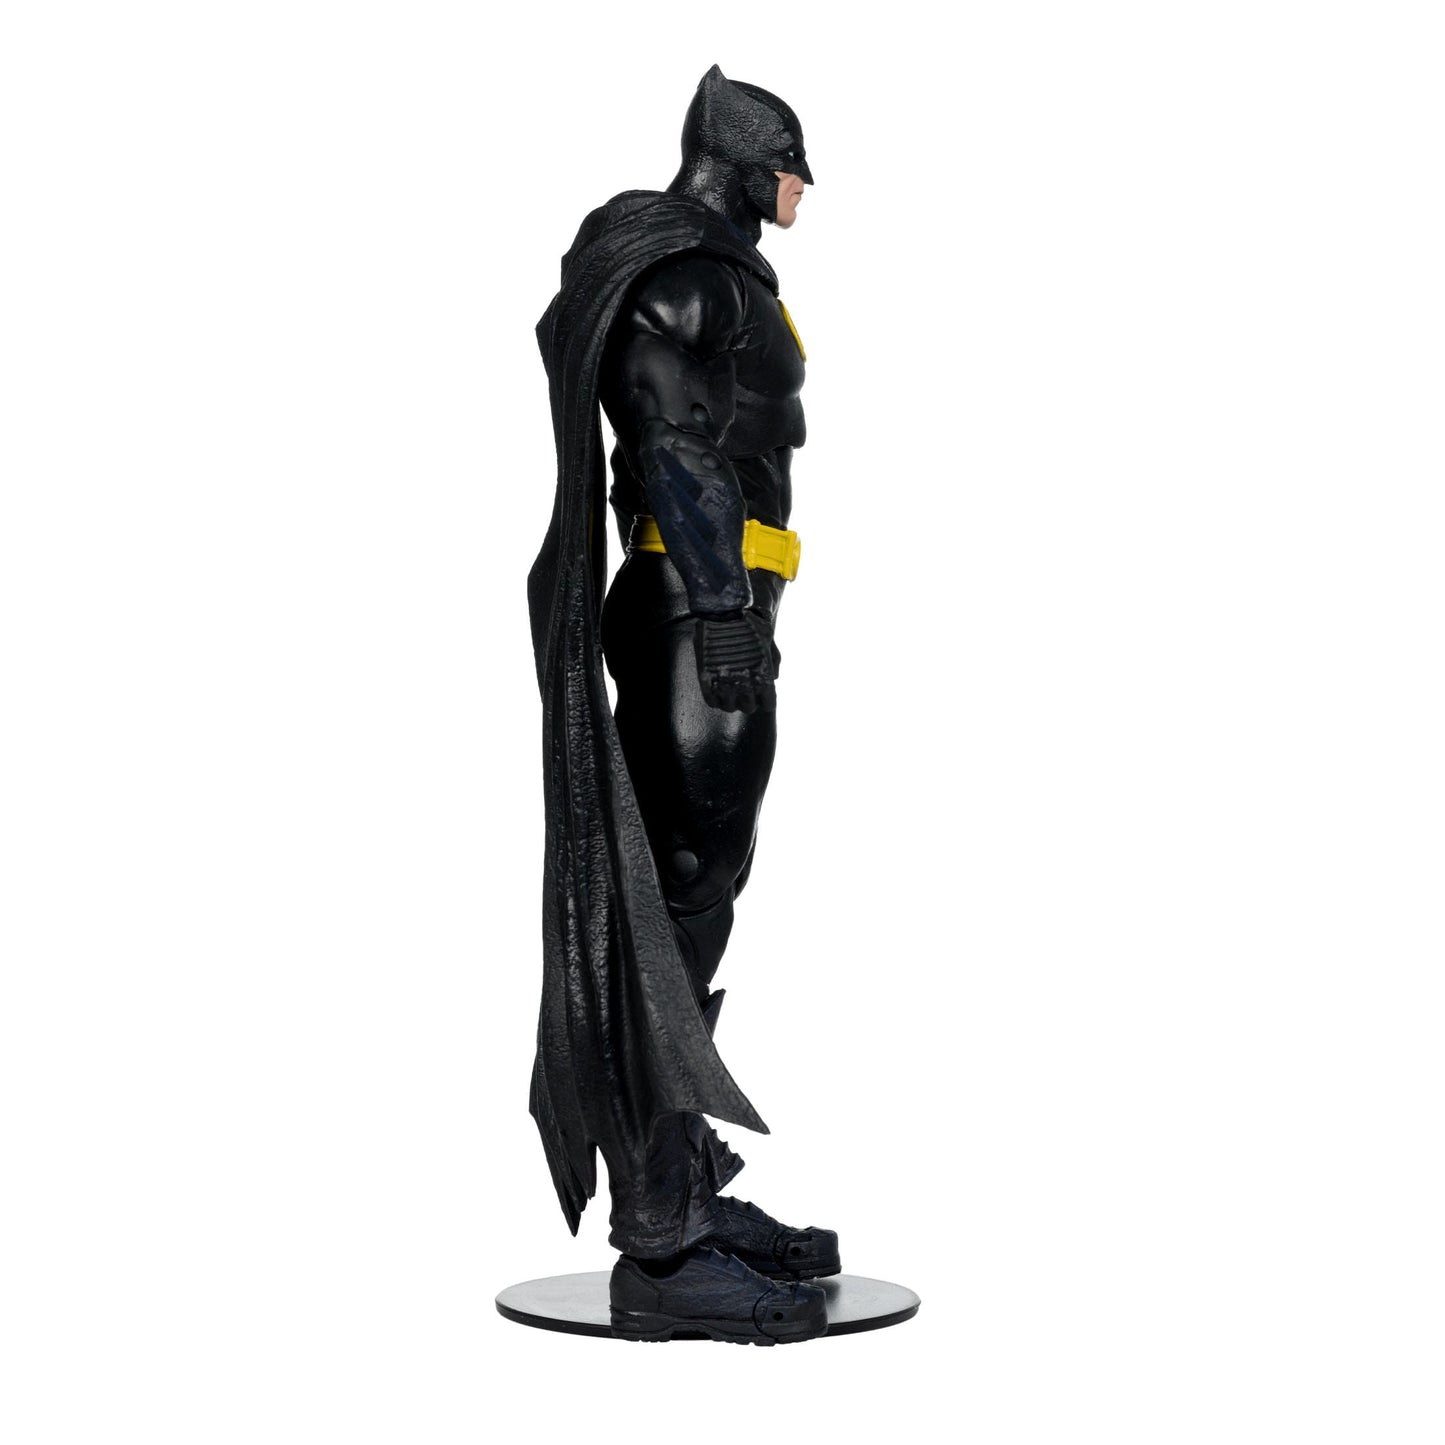 McFarlane DC Multiverse Build A Actionfigur JLA Batman 18cm